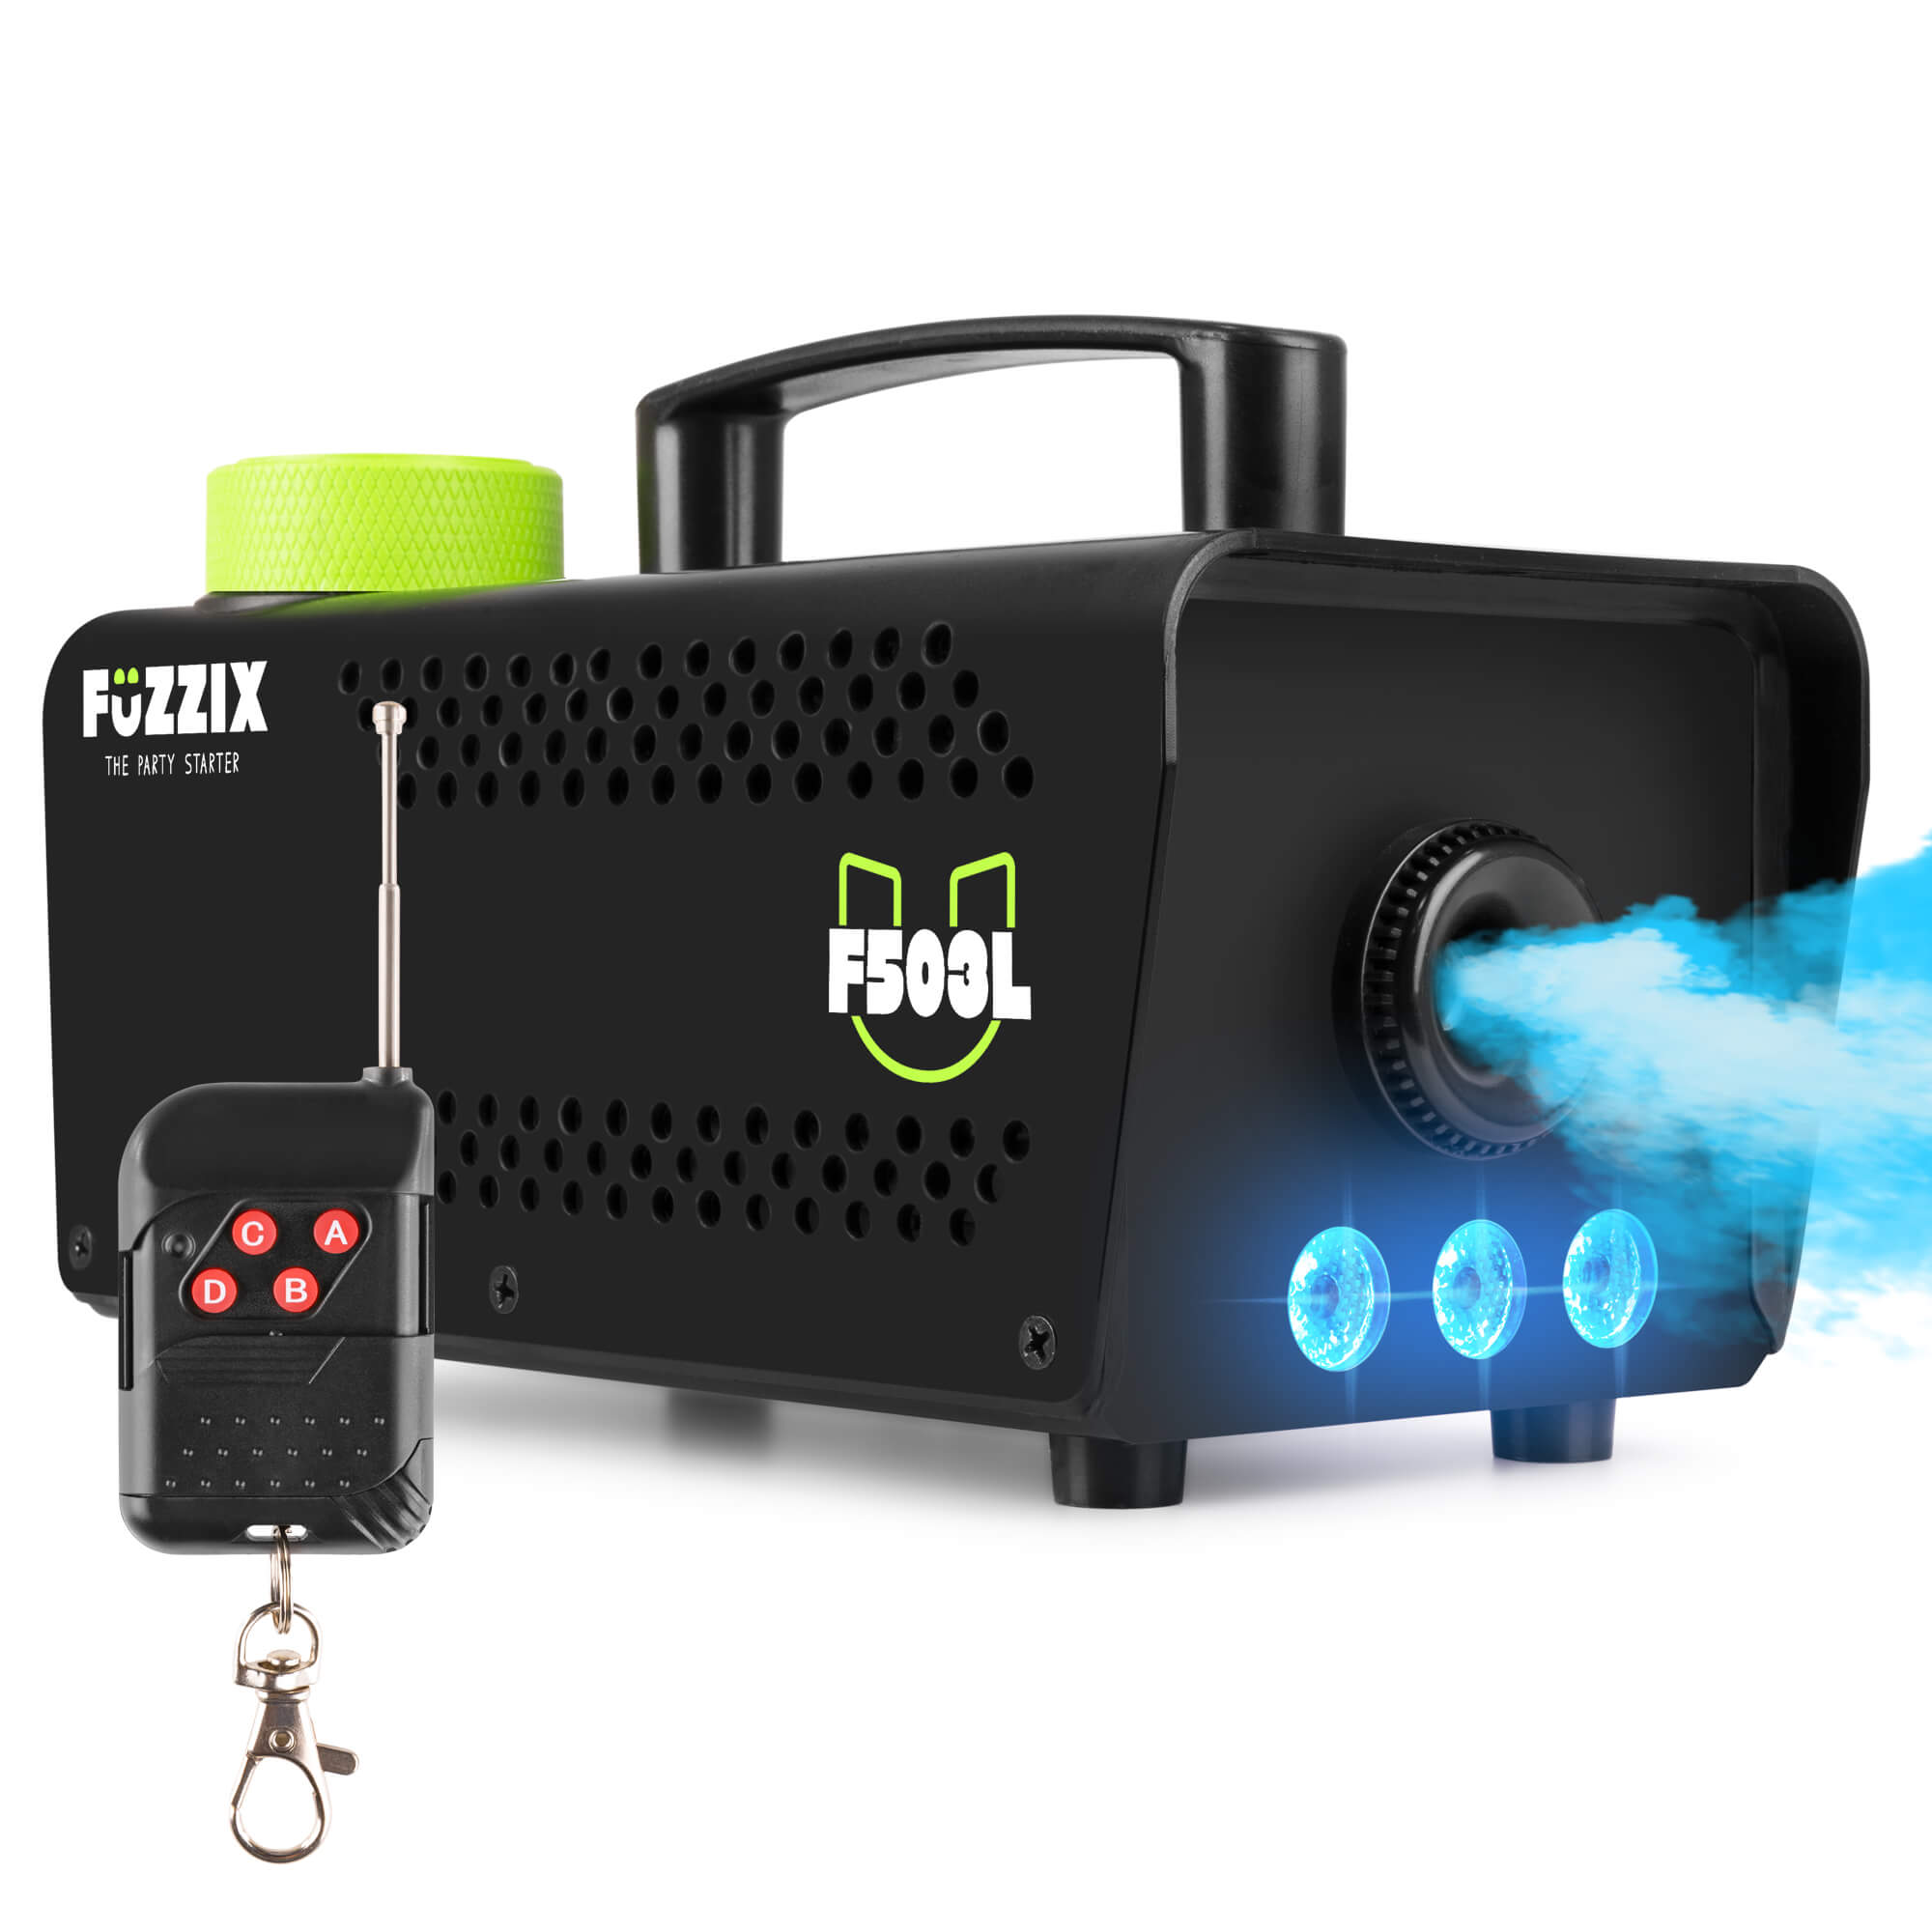 Fuzzix F503L Máquina de humo para fiestas de 500 w con 3 LED RGB y mando a distancia inalámbrico